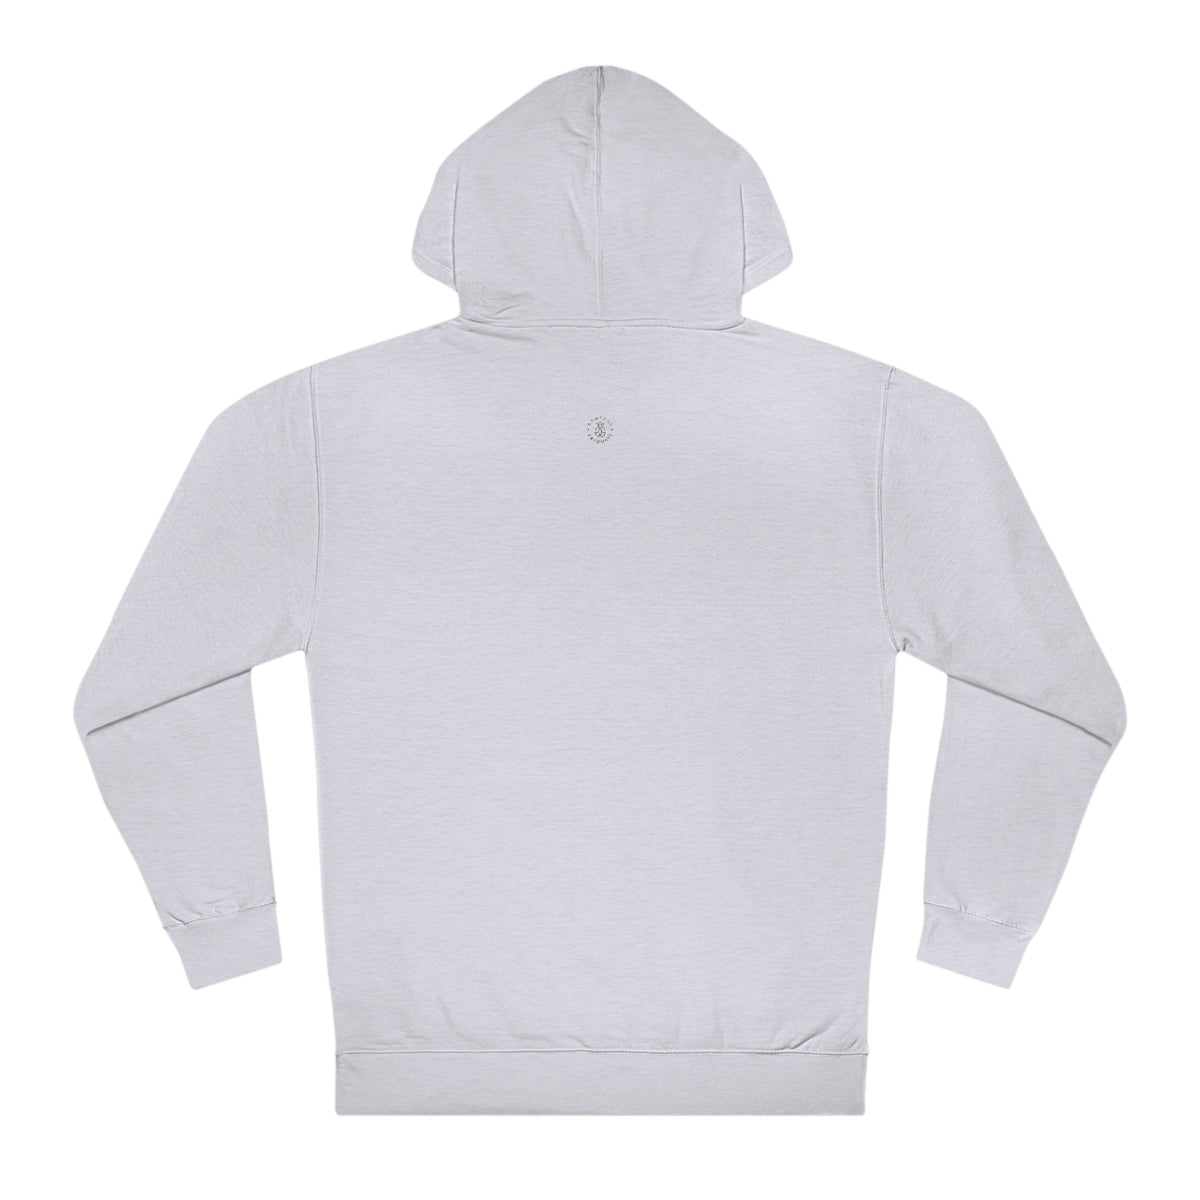 Oklahoma Hooded Sweatshirt - GG - ITC